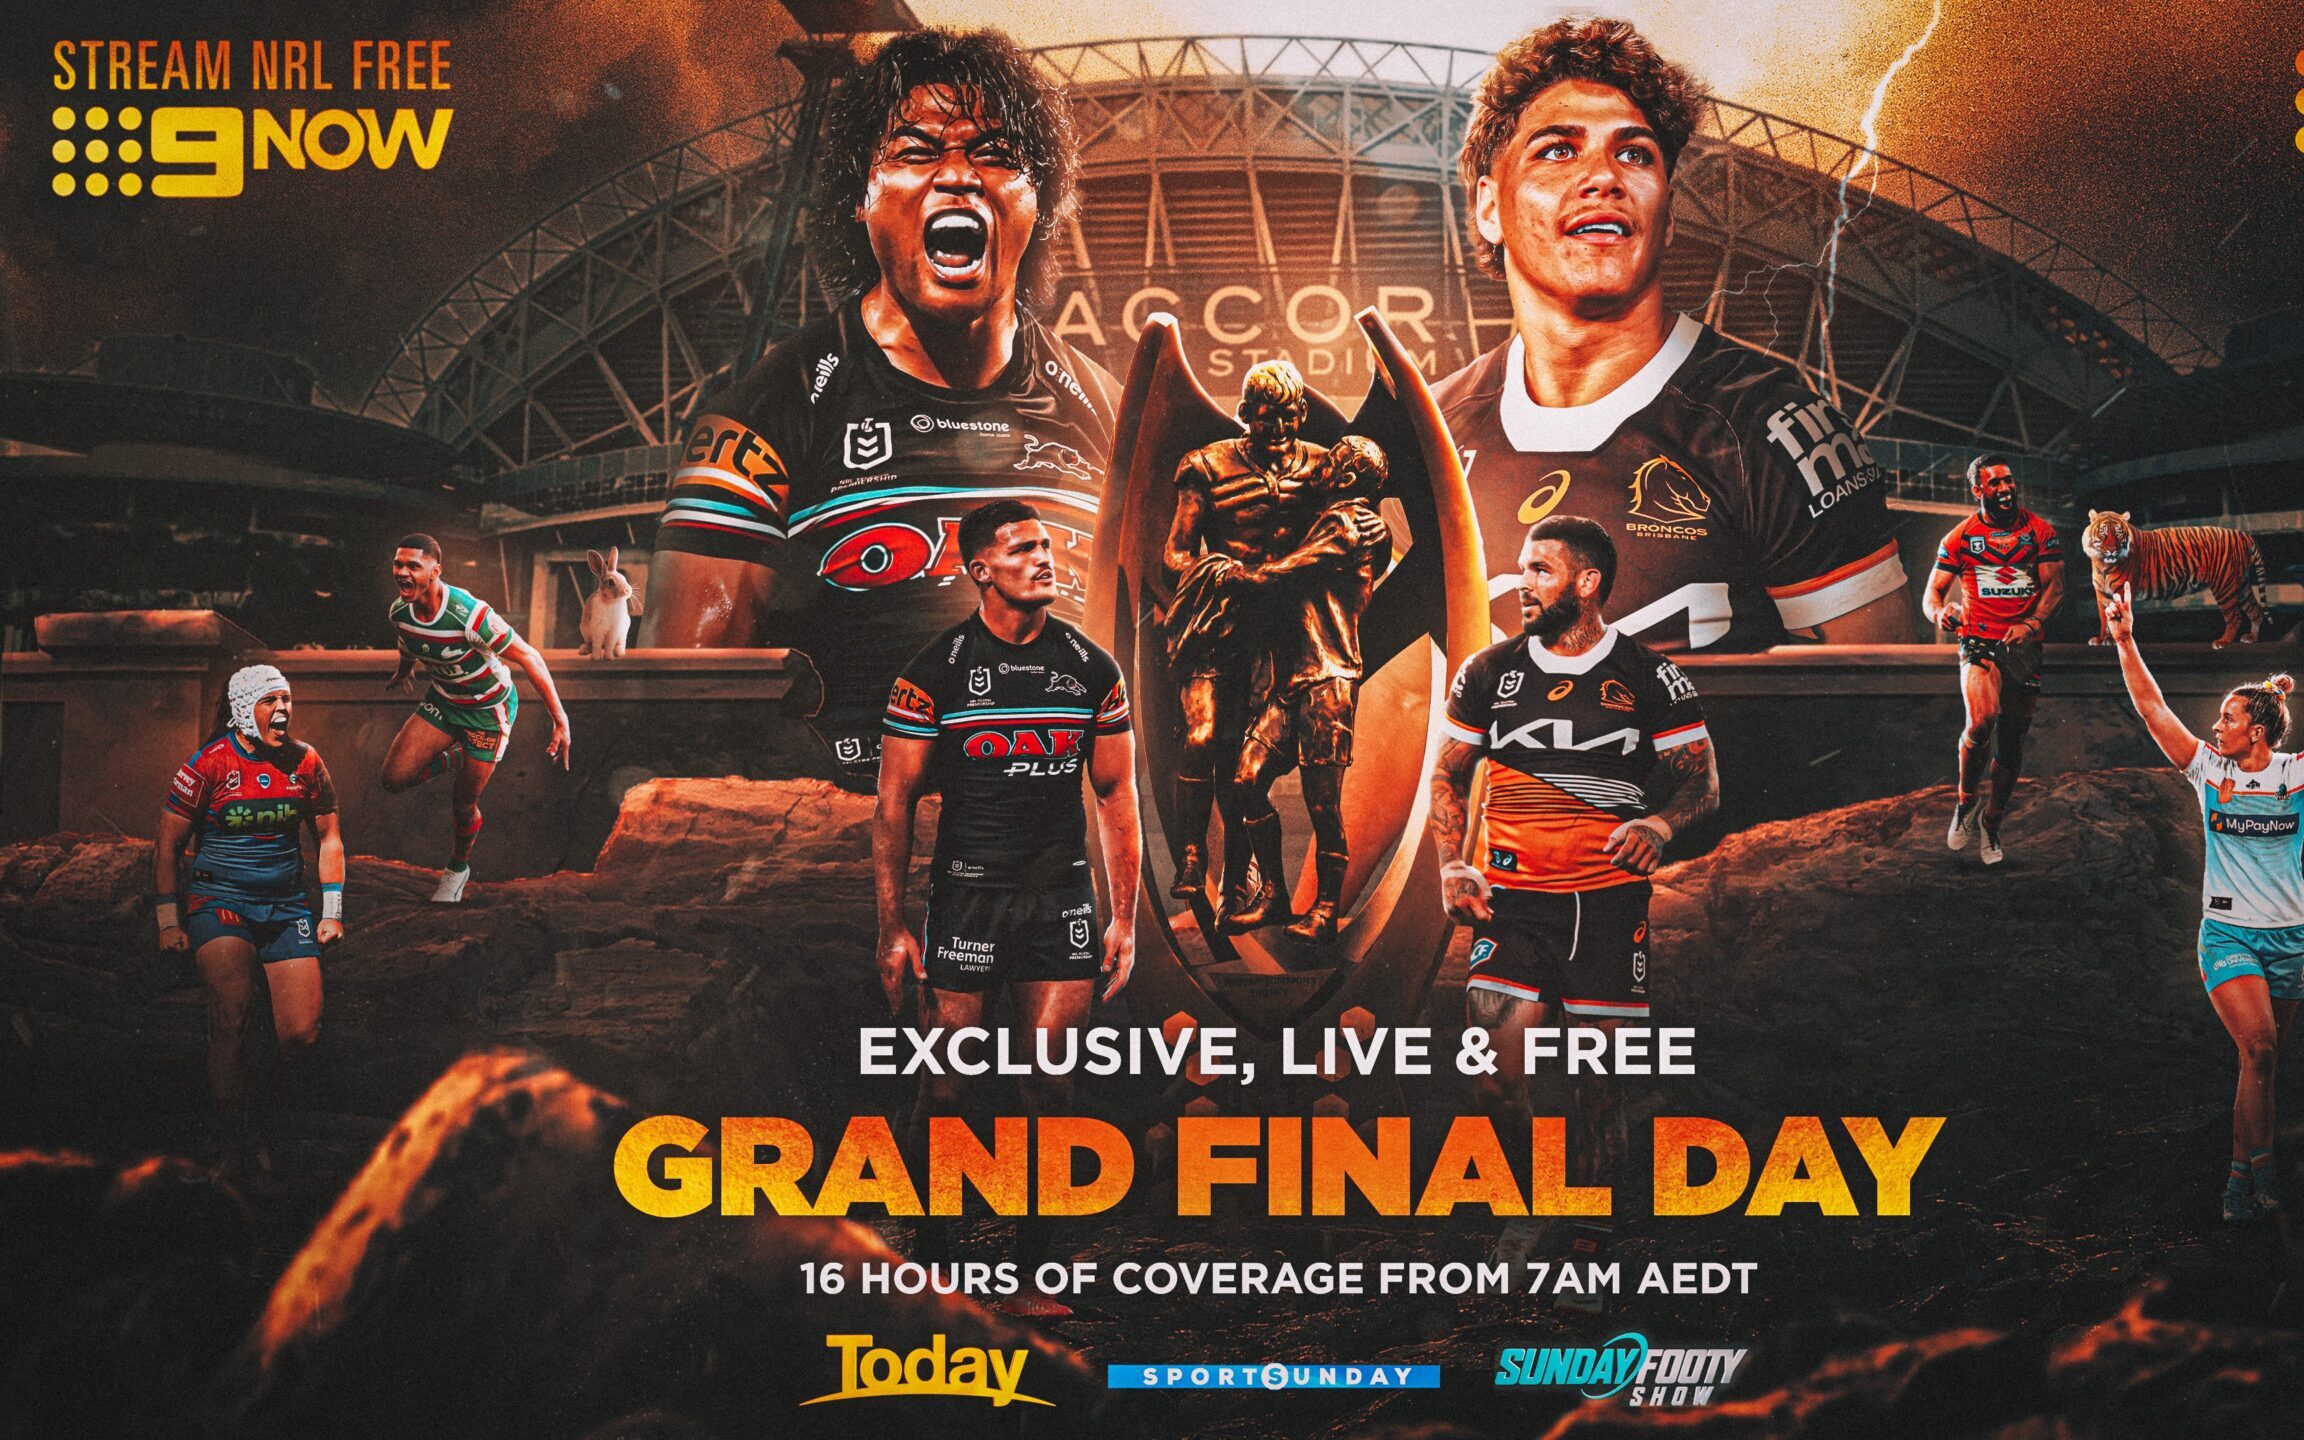 NRL Grand Final on Channel 9 broadcast details